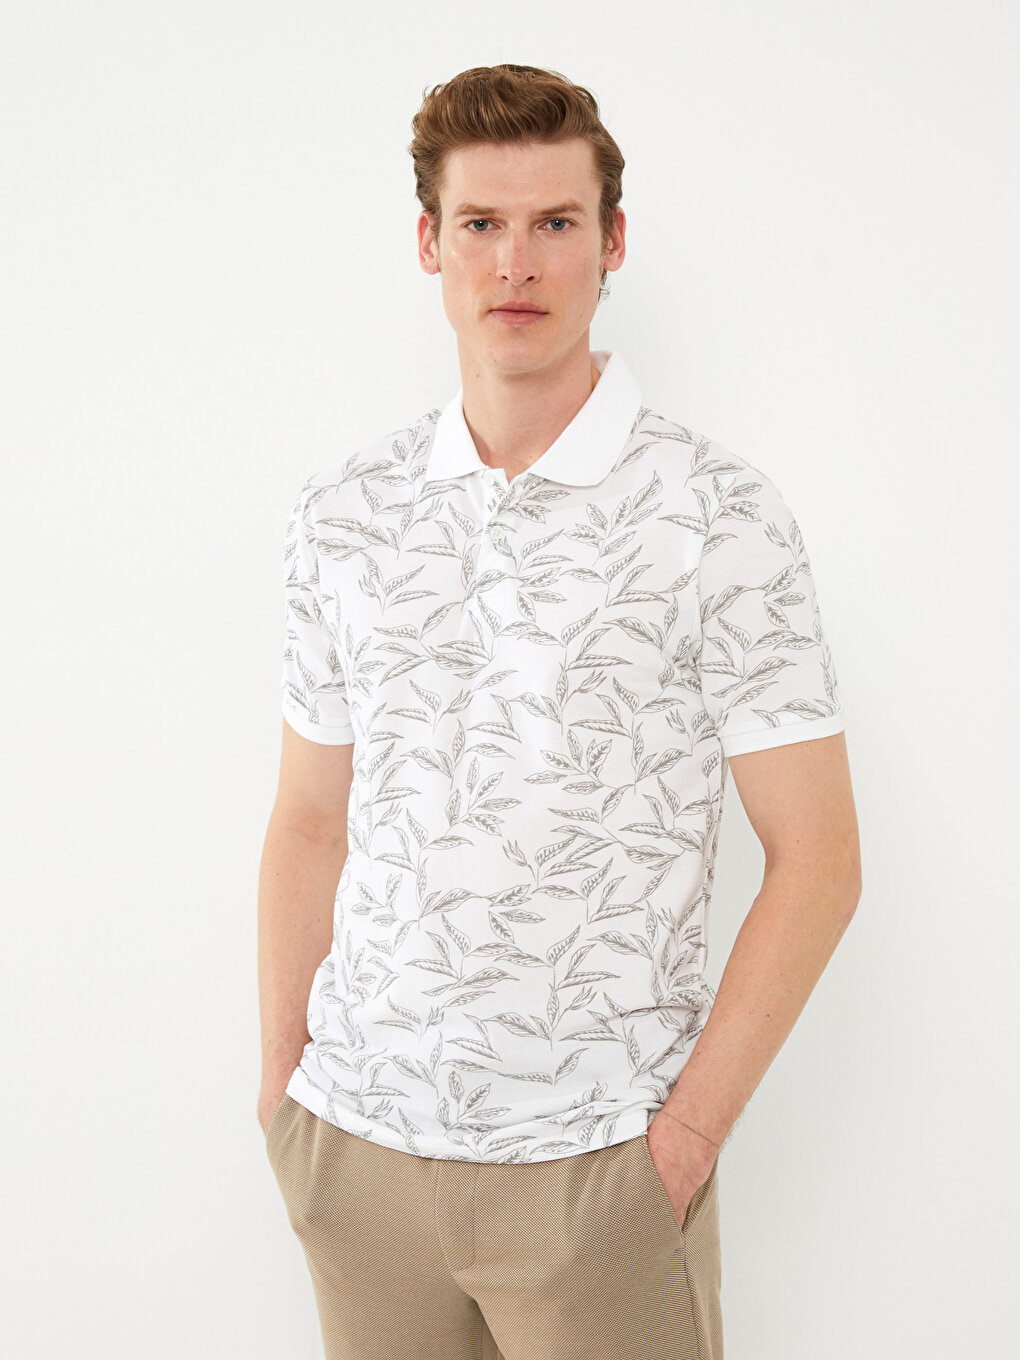 Мужская футболка из пике с короткими рукавами и воротником-поло с рисунком LCW Vision, белый печатный